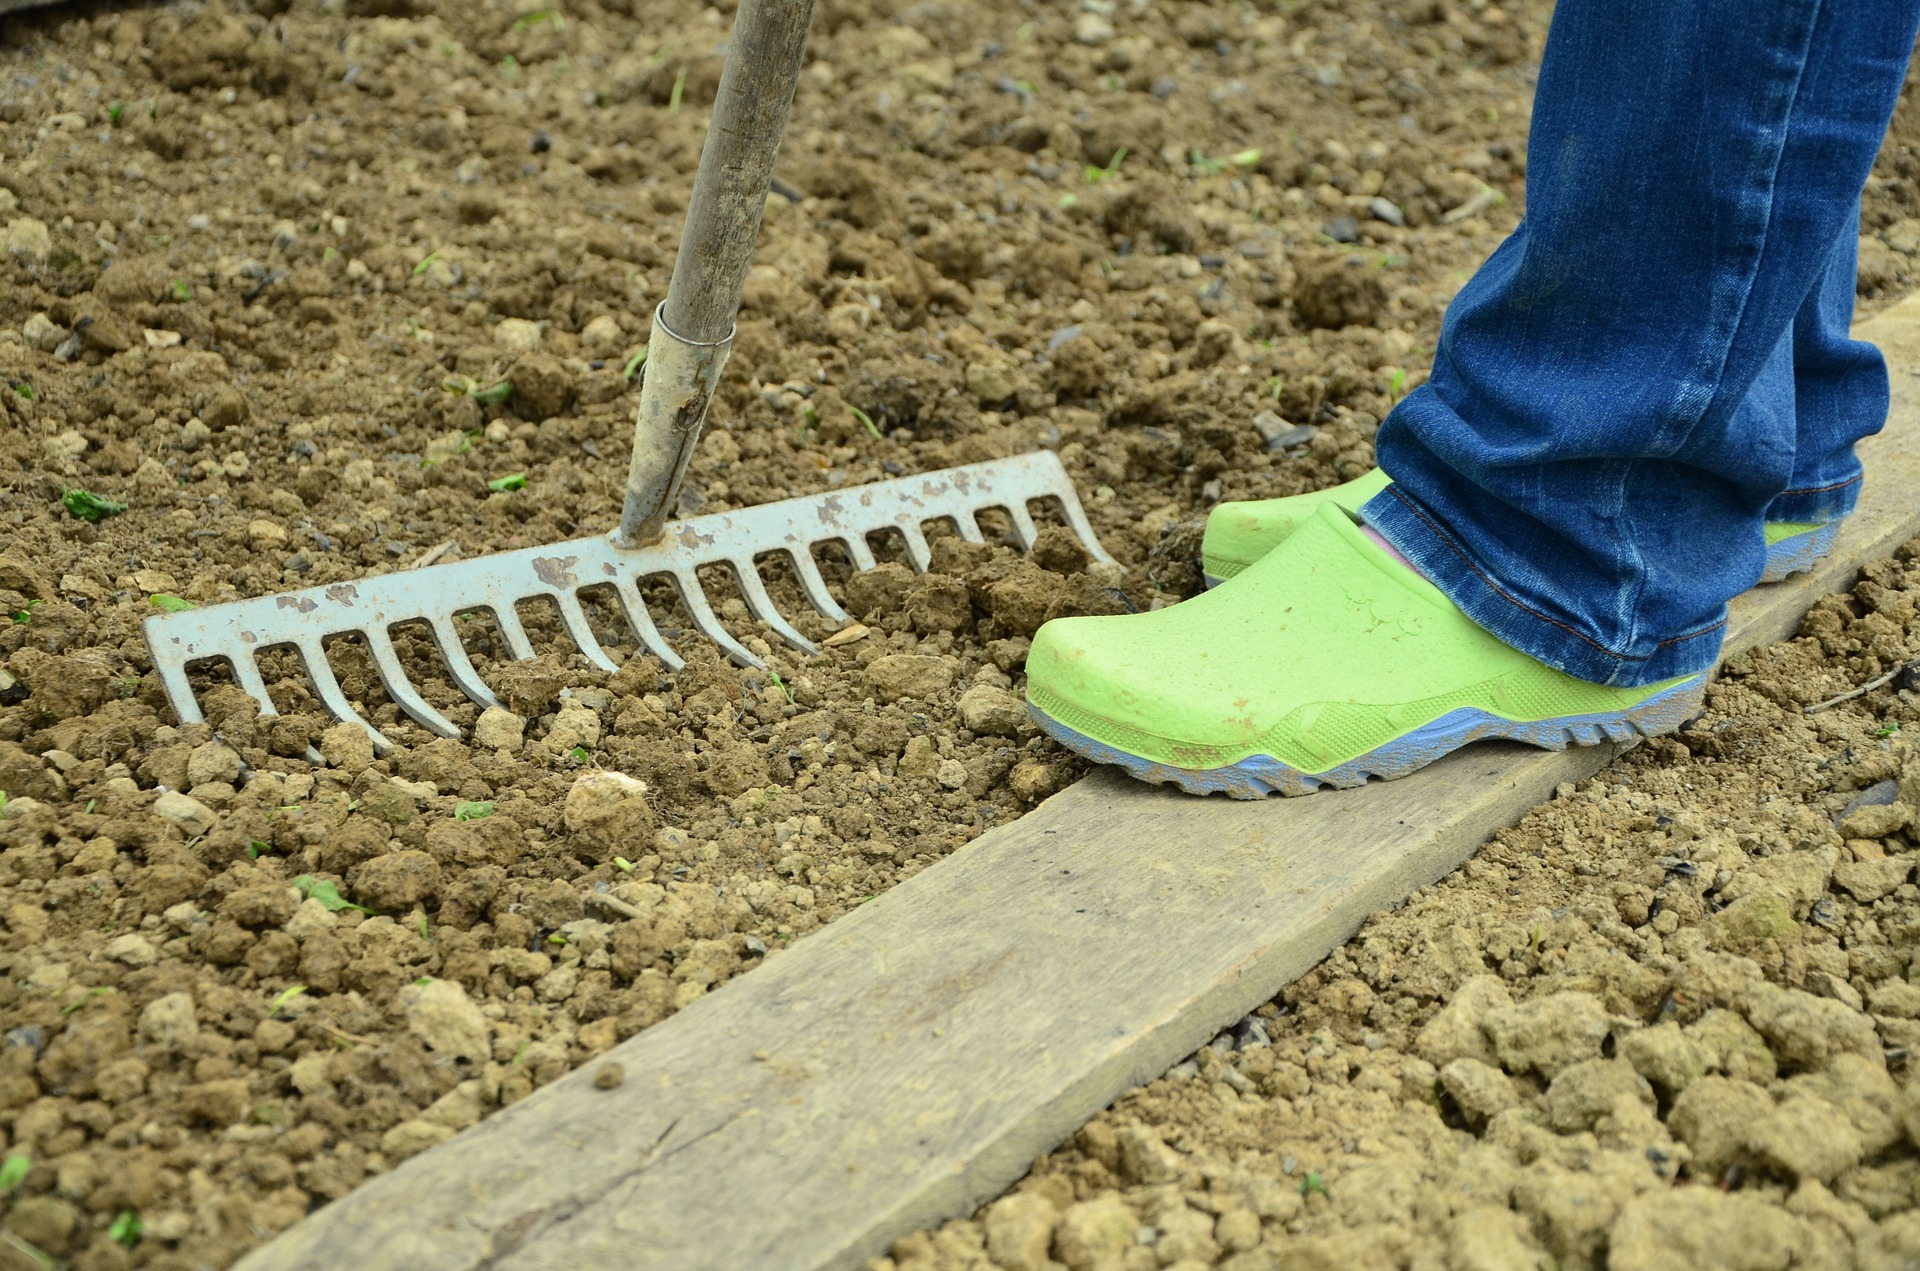 No-dig gardening is trending in UK in 2020